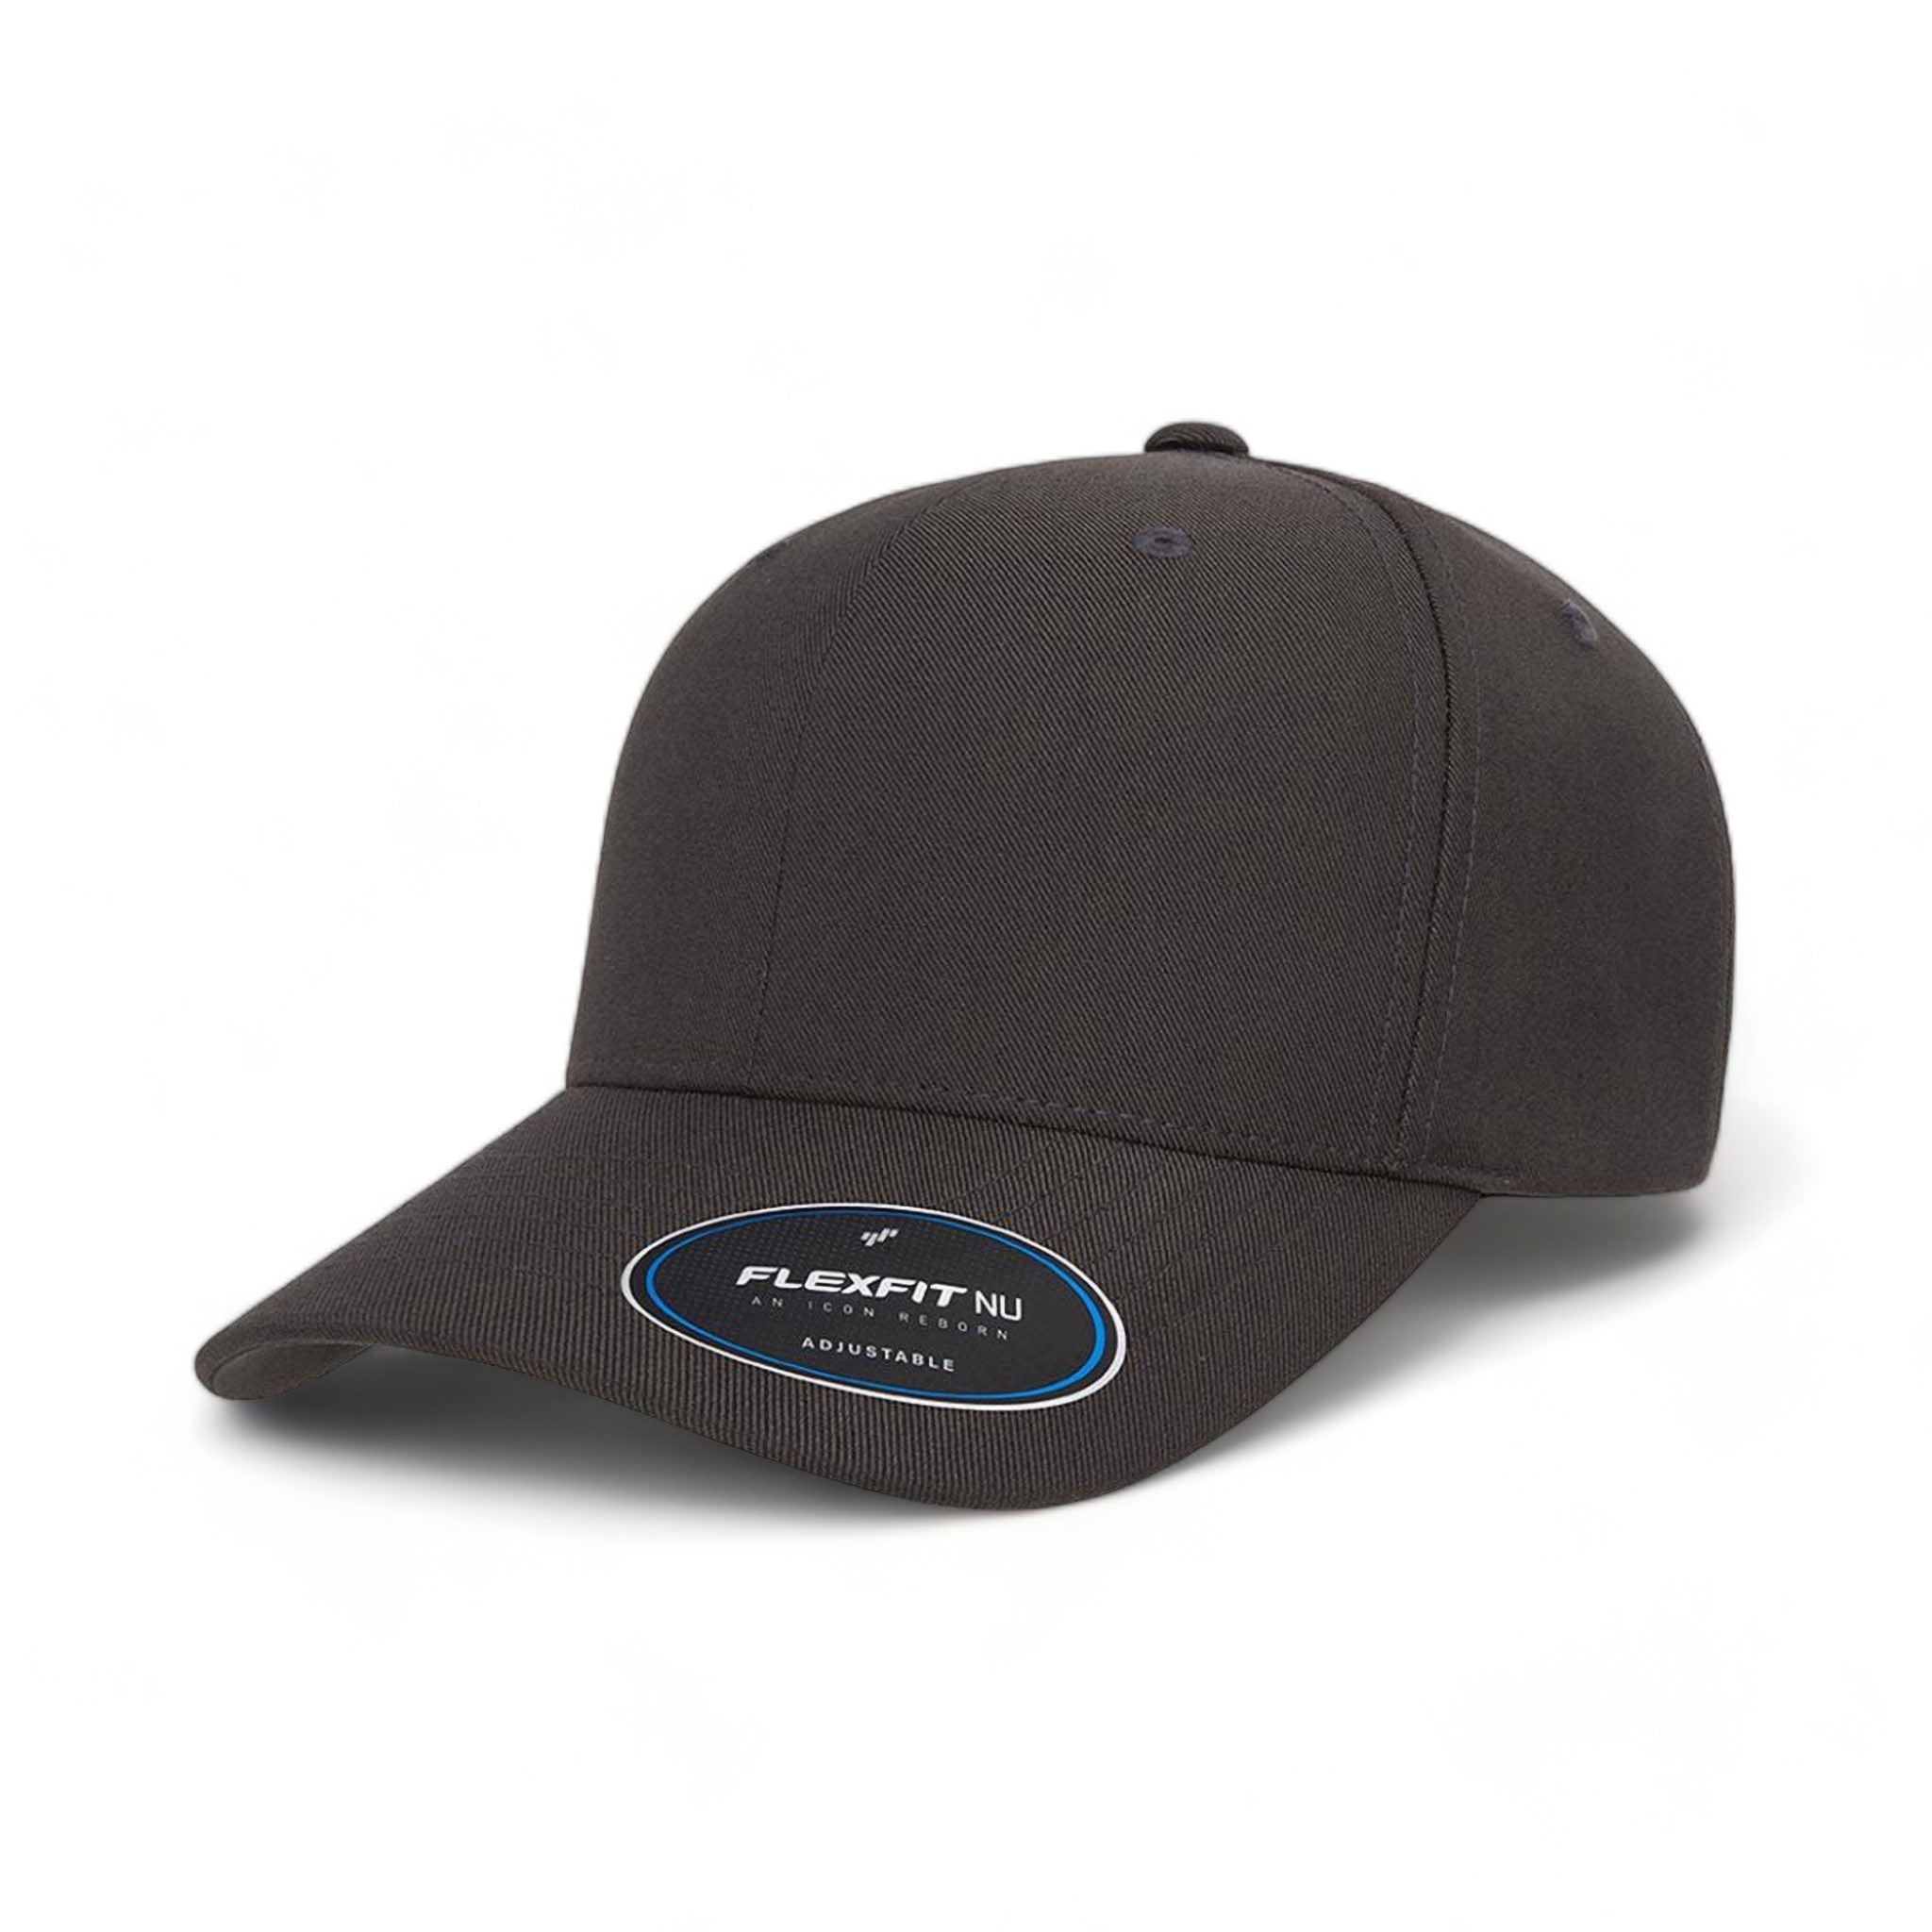 Side view of Flexfit 6110NU custom hat in dark grey